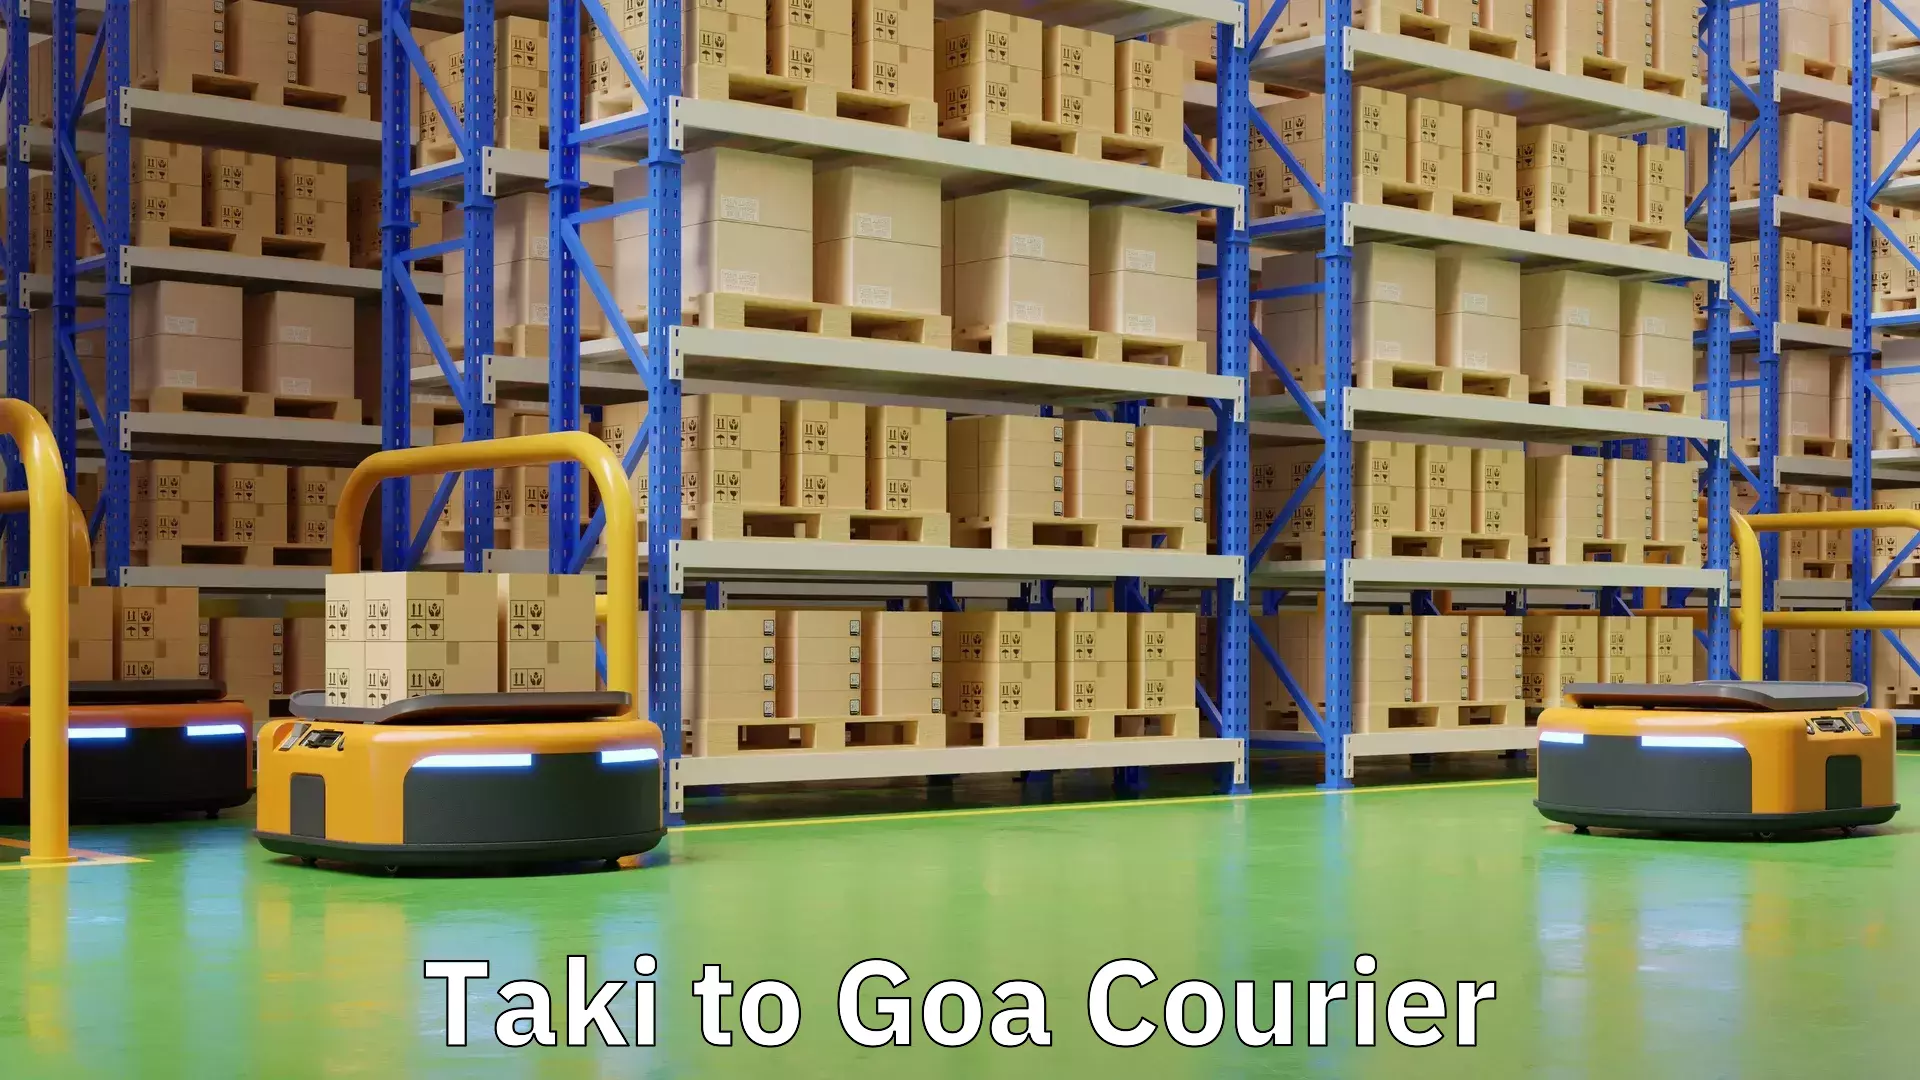 Multi-national courier services Taki to Goa